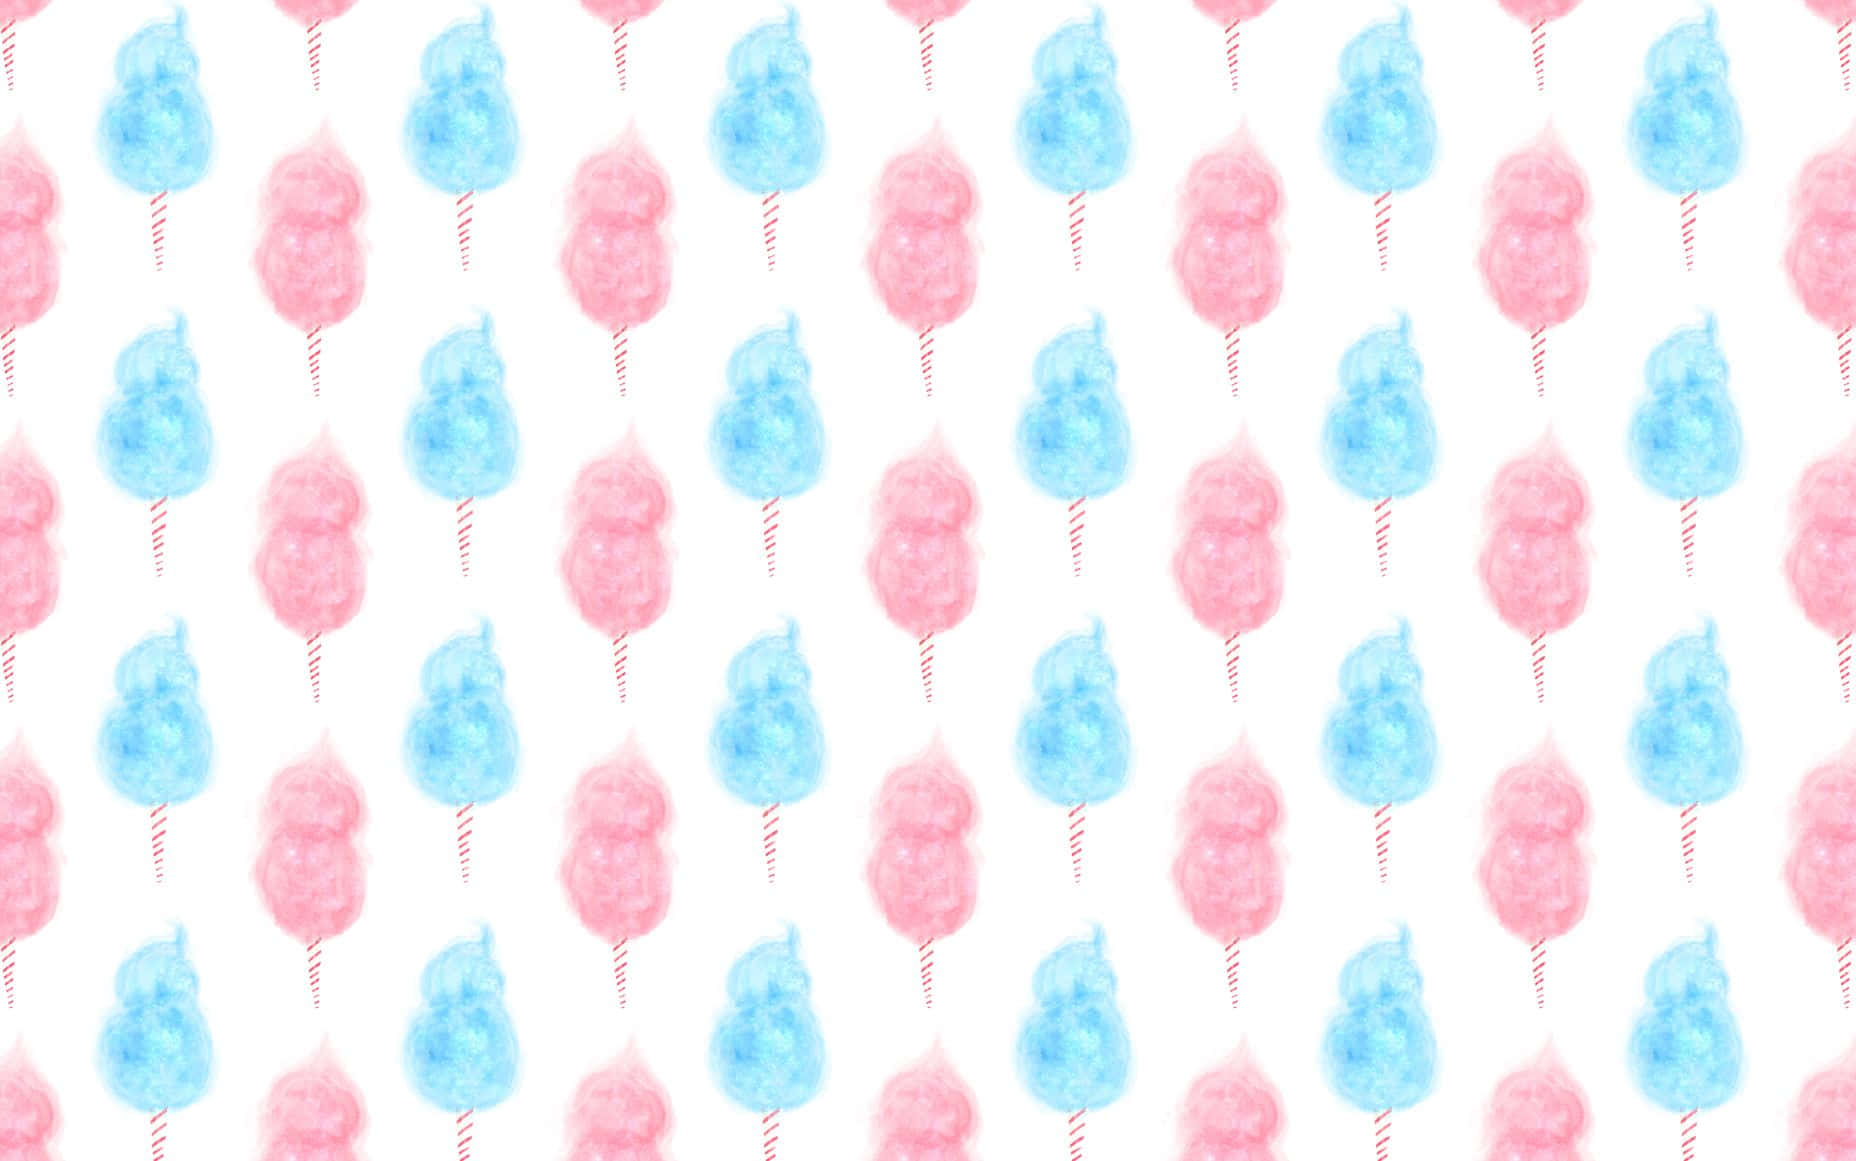 Pastel Cotton Candy Tie Dye Spiral Swirl Crop Top in Pink + Blue